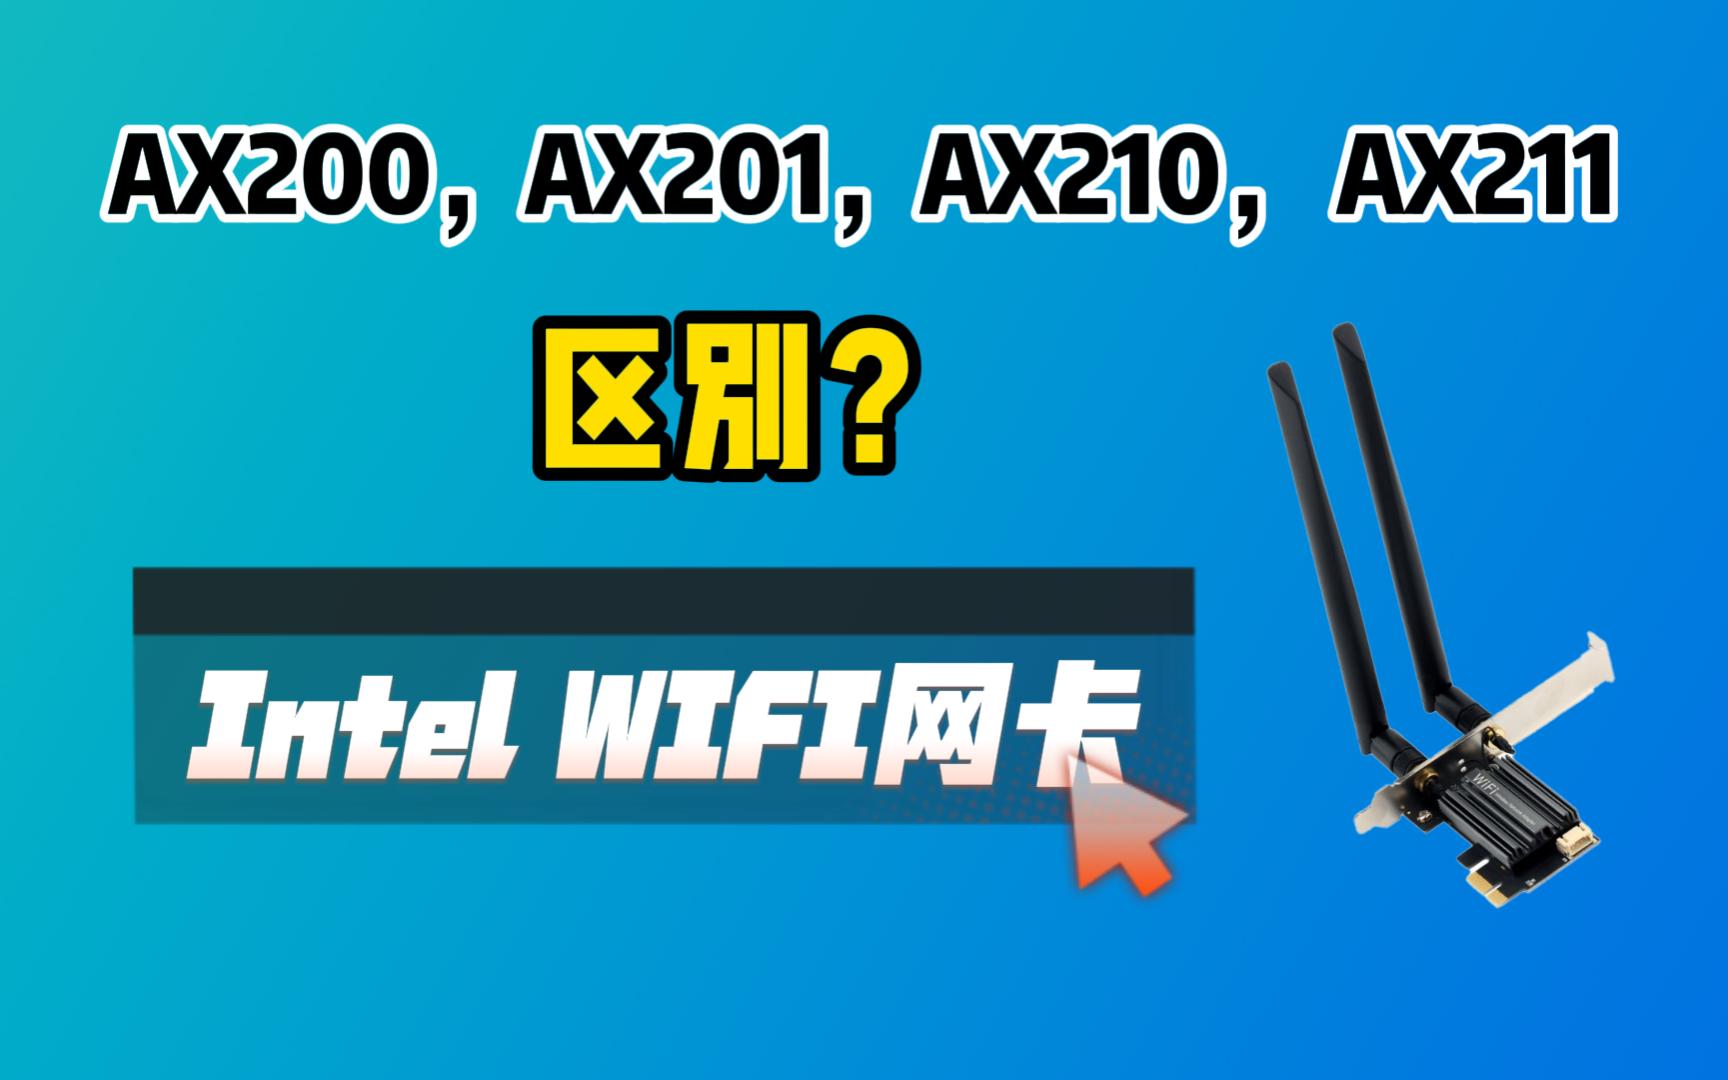 英特尔这几种WIFI无线网卡区别是？需要注意以免买错。AX200，AX201，AX210，AX211的区别和适用CPU平台